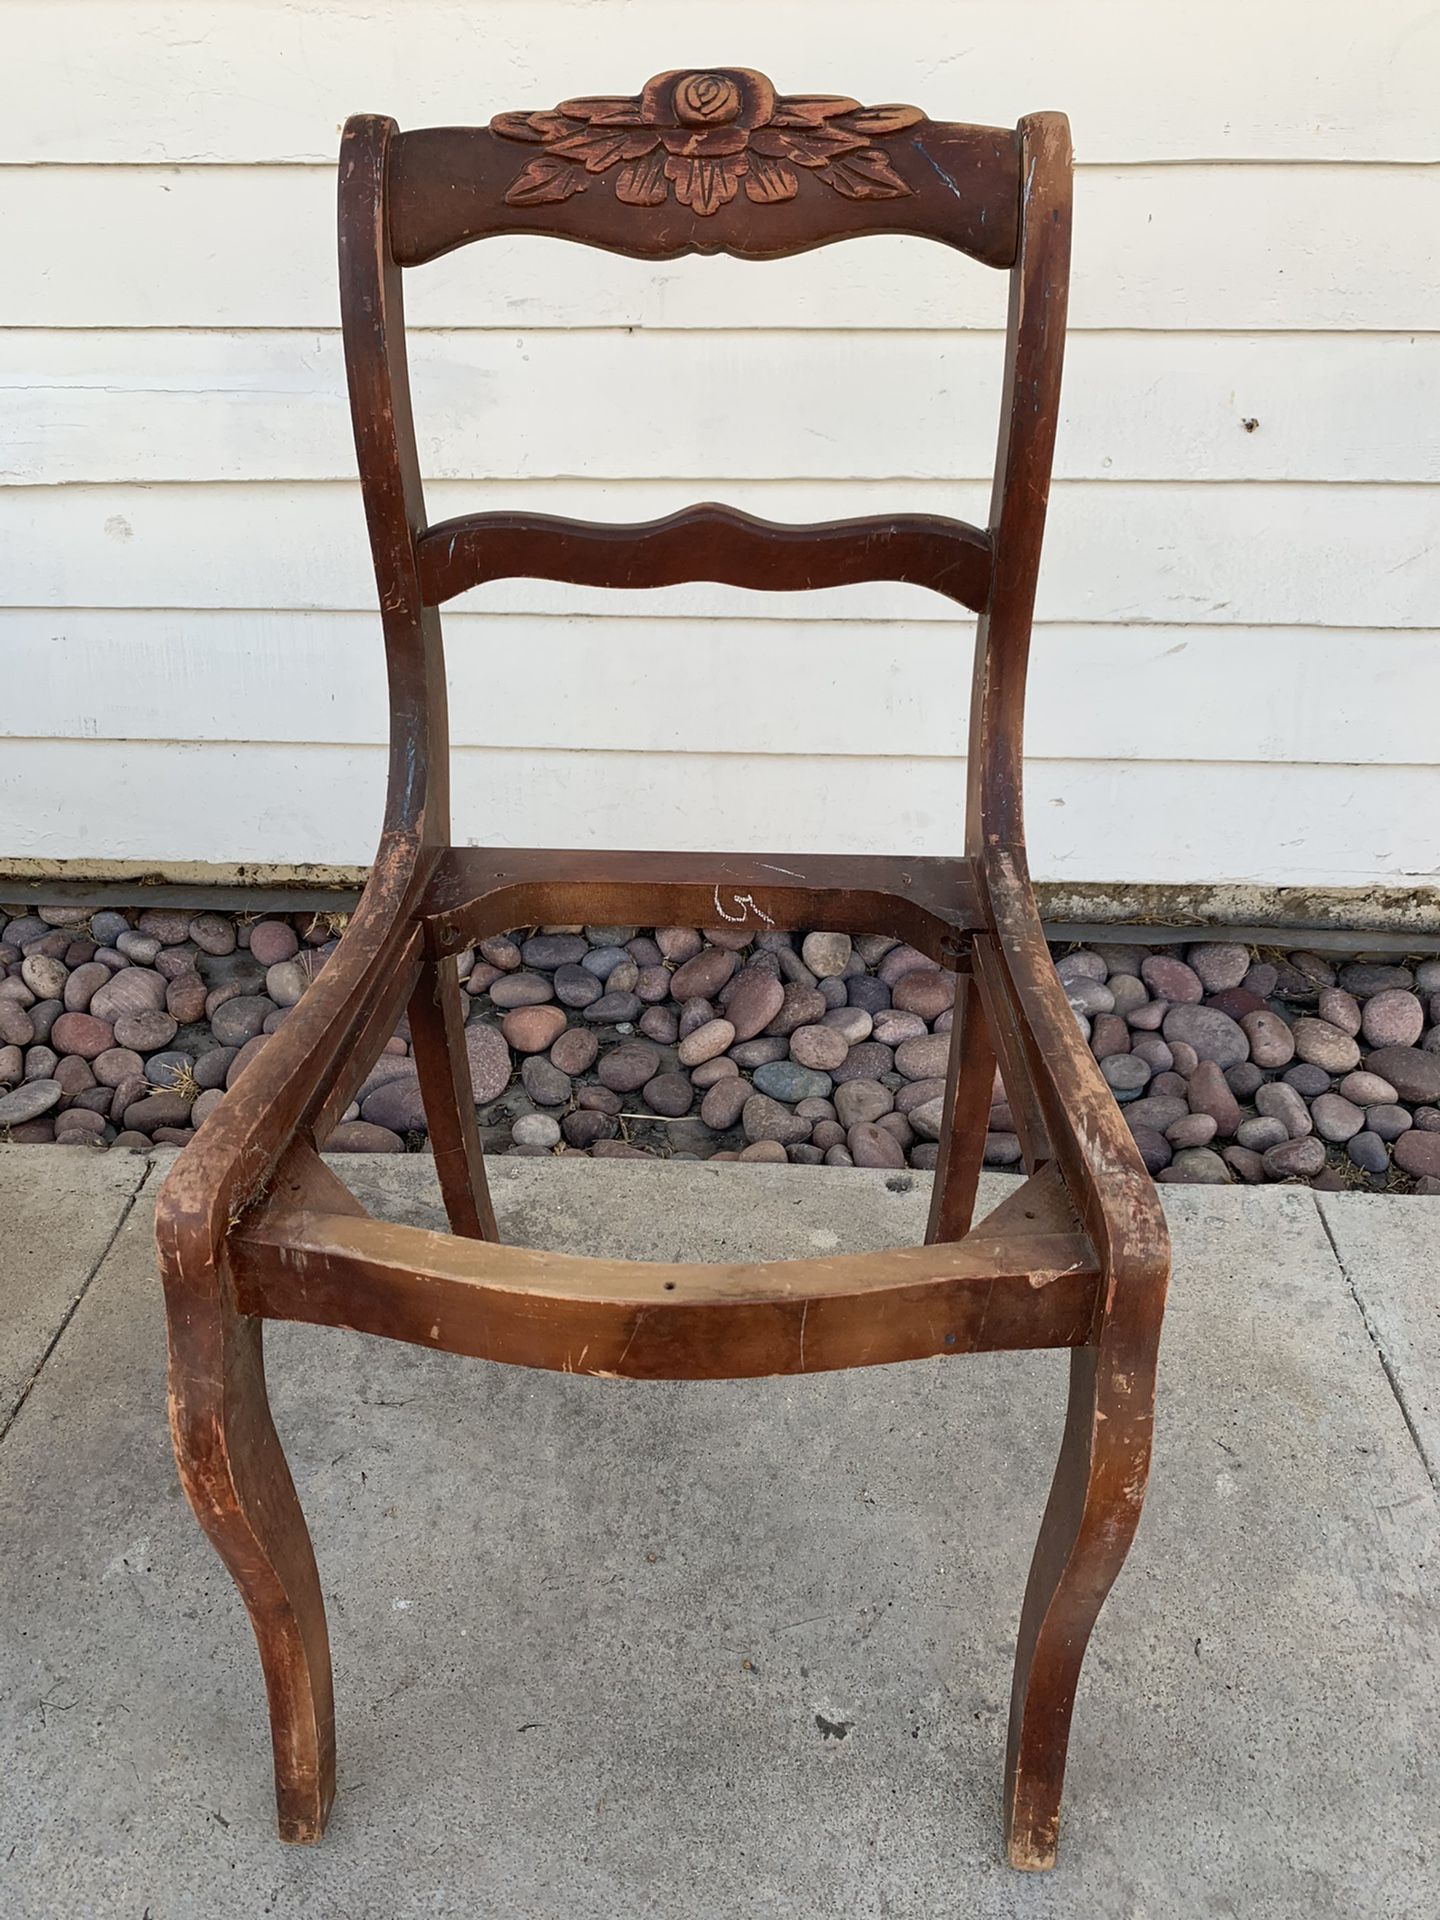 Antique chair frame